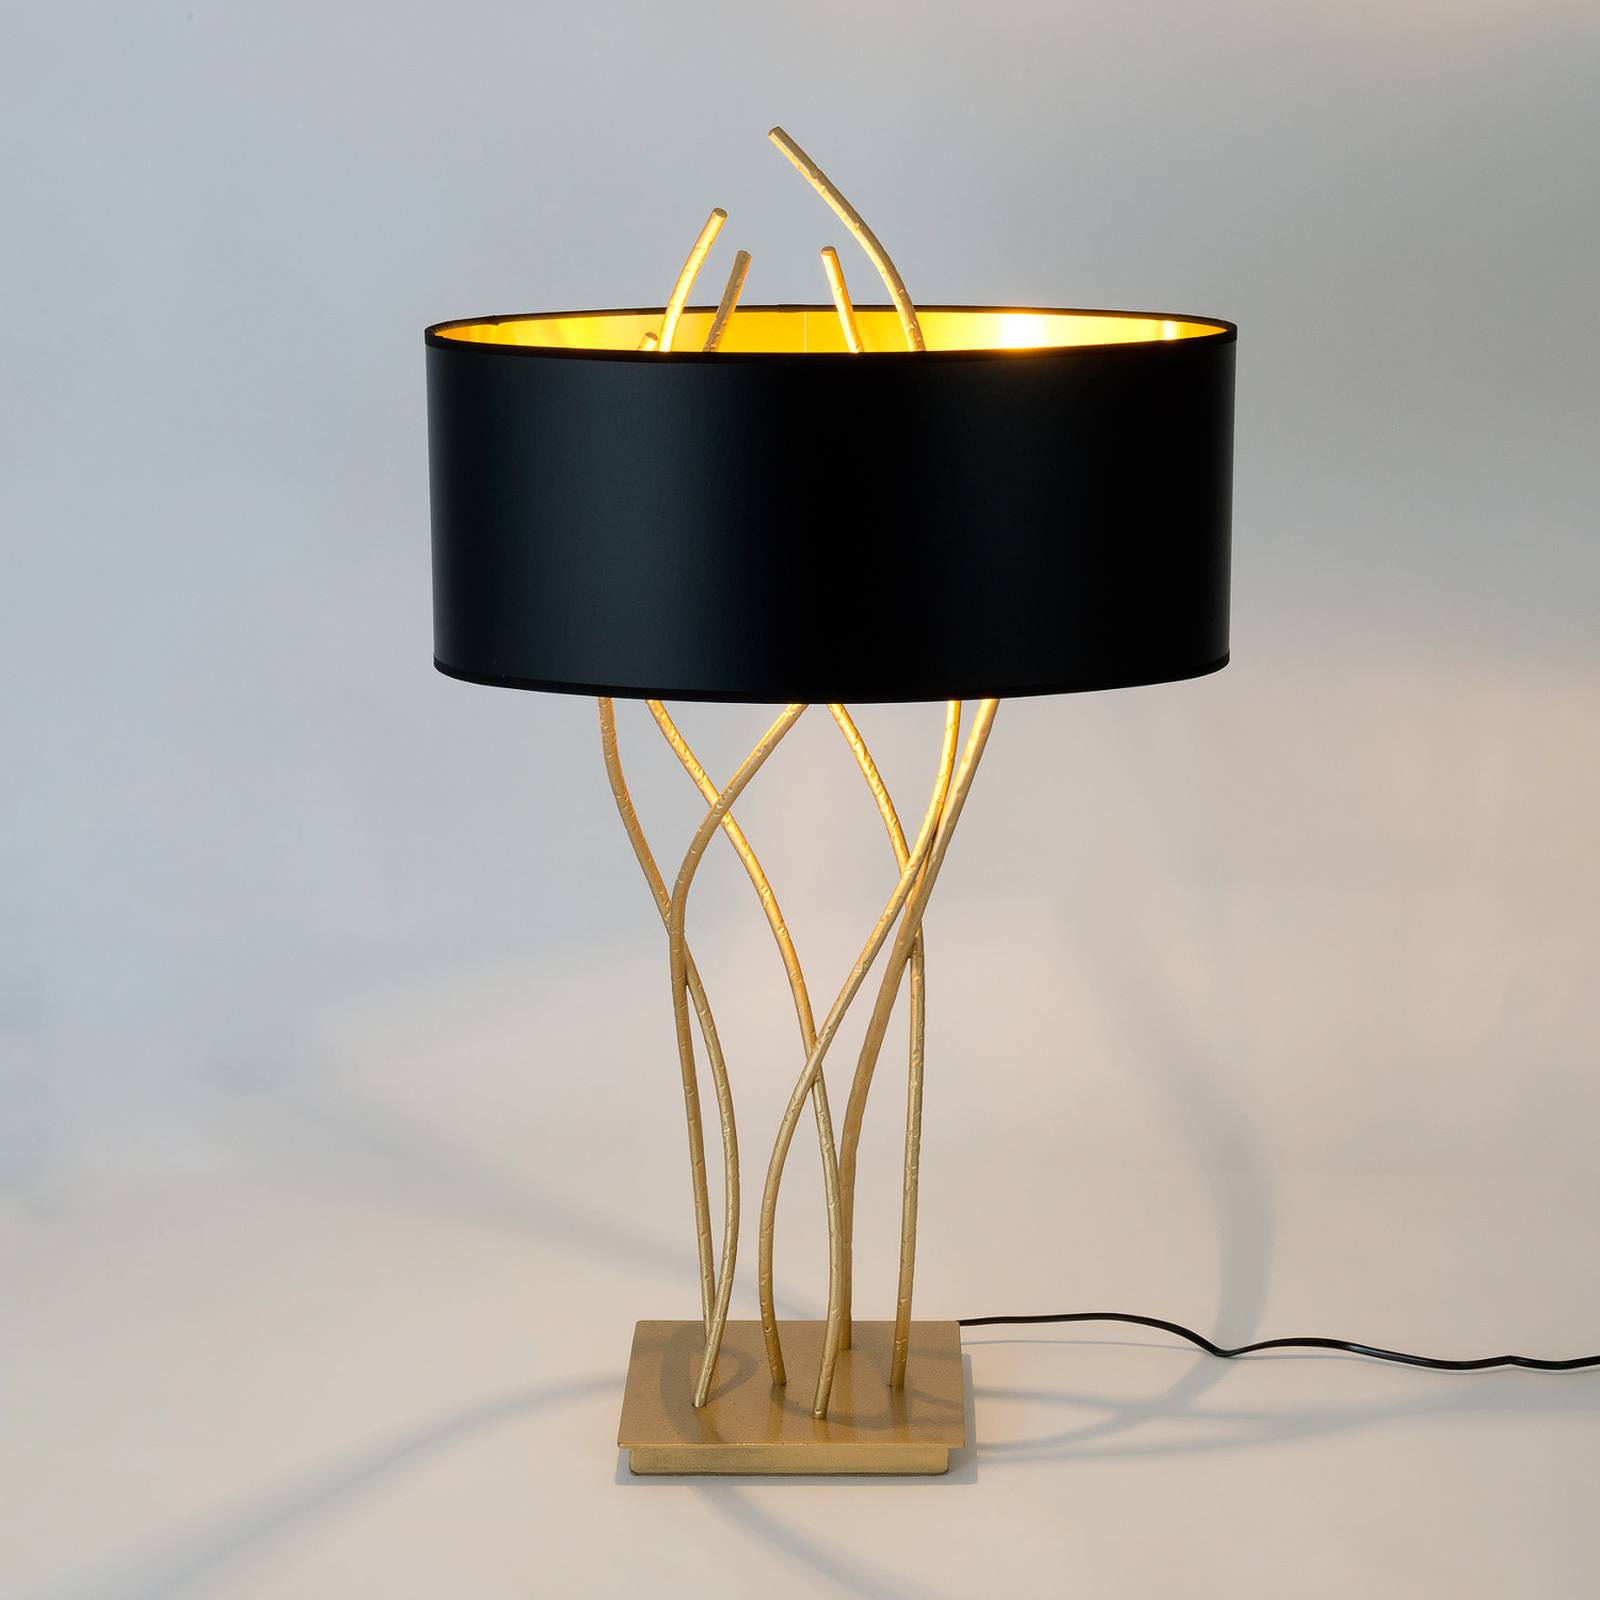 Holländer Oválná stolní lampa Elba, zlatá/černá, výška 75 cm, železo